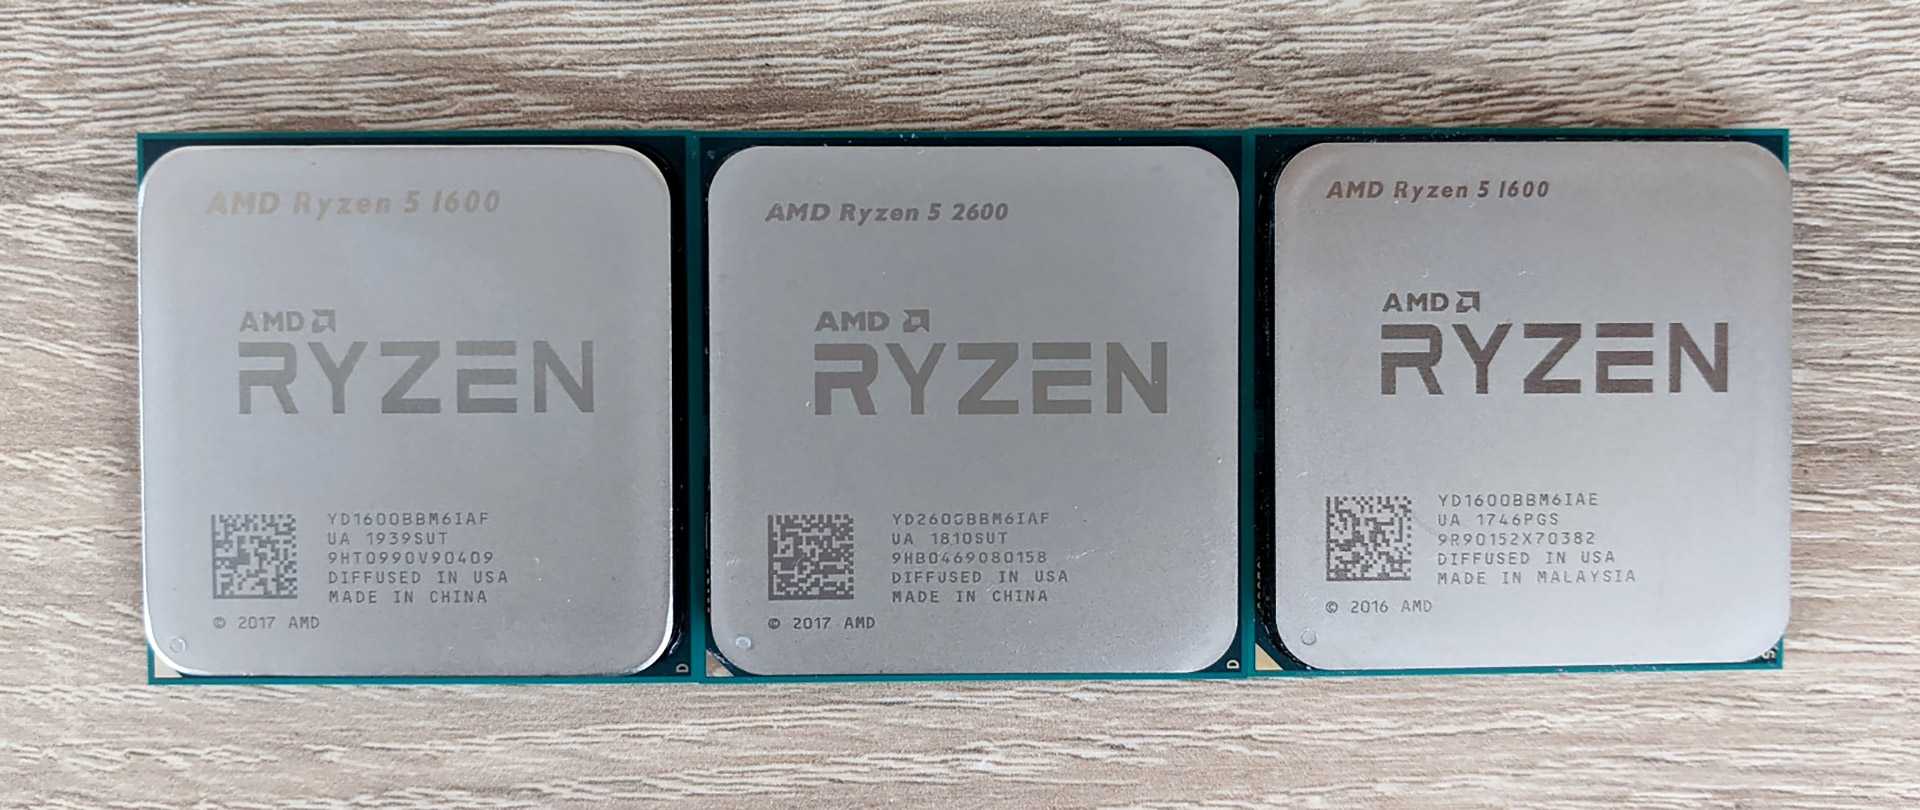 Тест и обзор: amd ryzen 5 3600x - производительный 6-ядерный процессор с привлекательной ценой - hardwareluxx russia